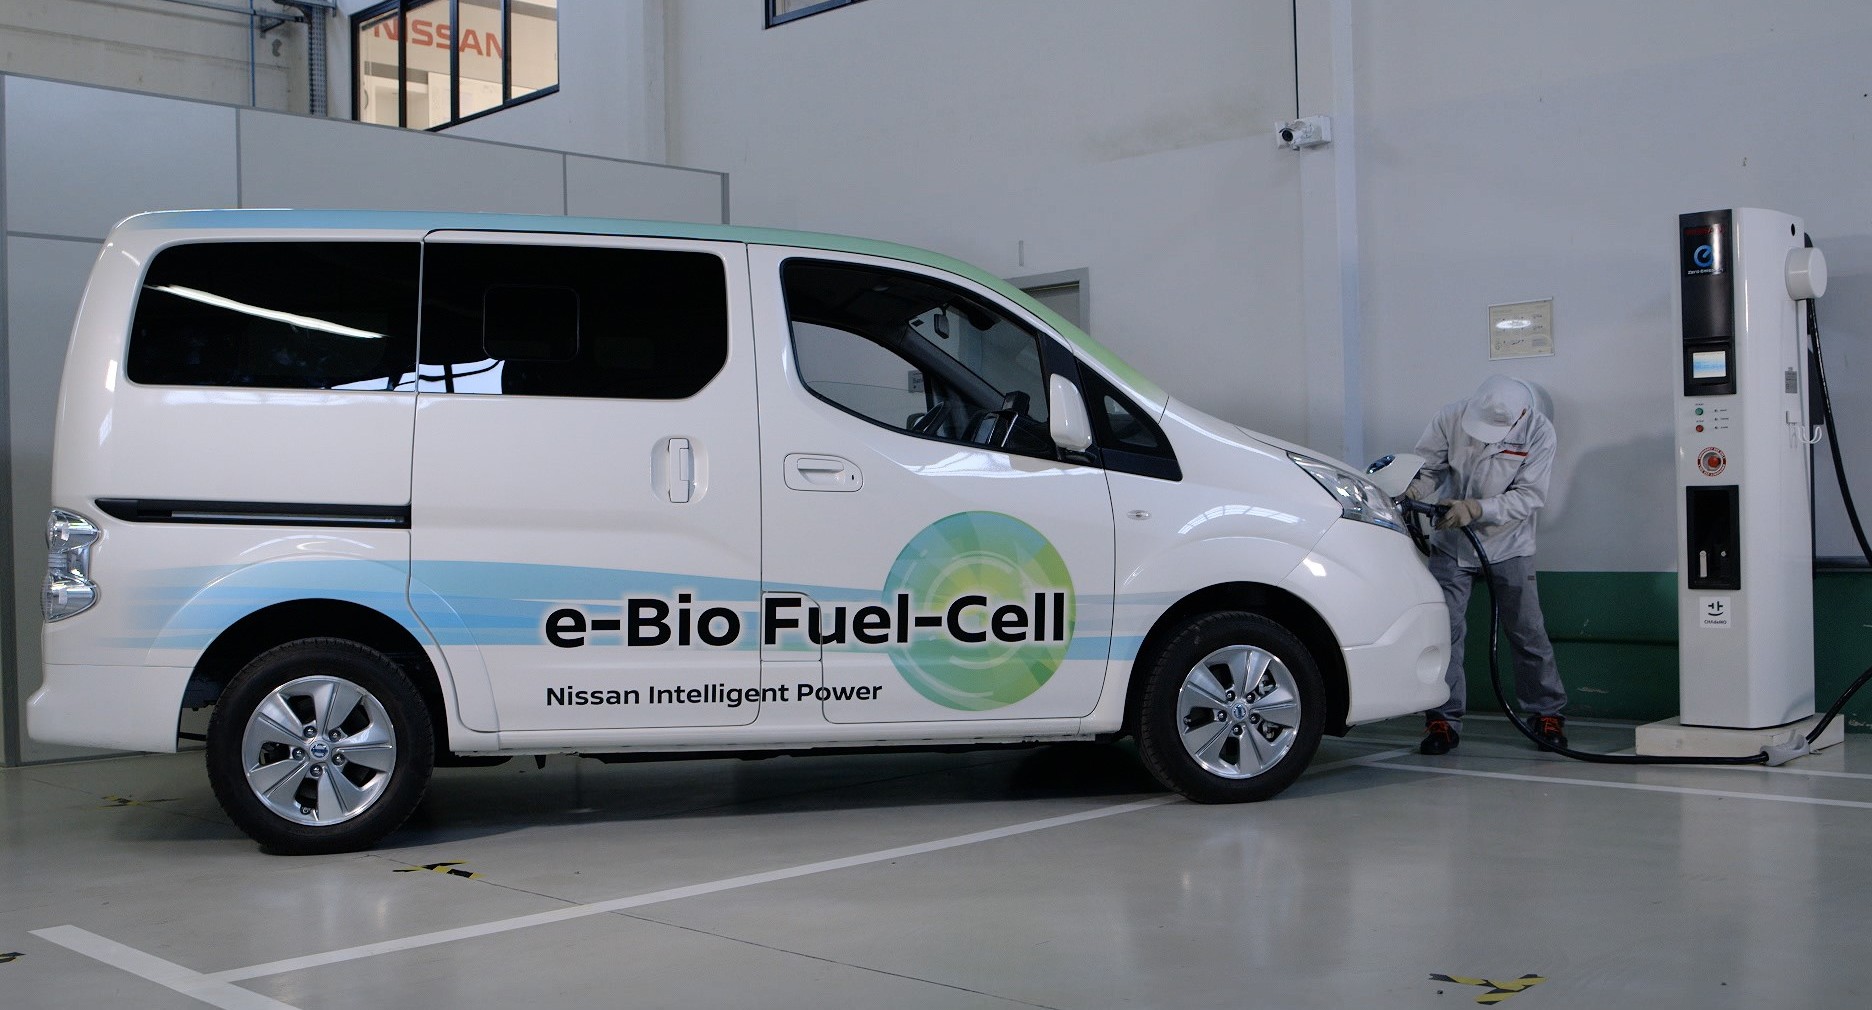 Nutzfahrzeug Mit Bioethanol Brennstoffzelle In Der Erprobung